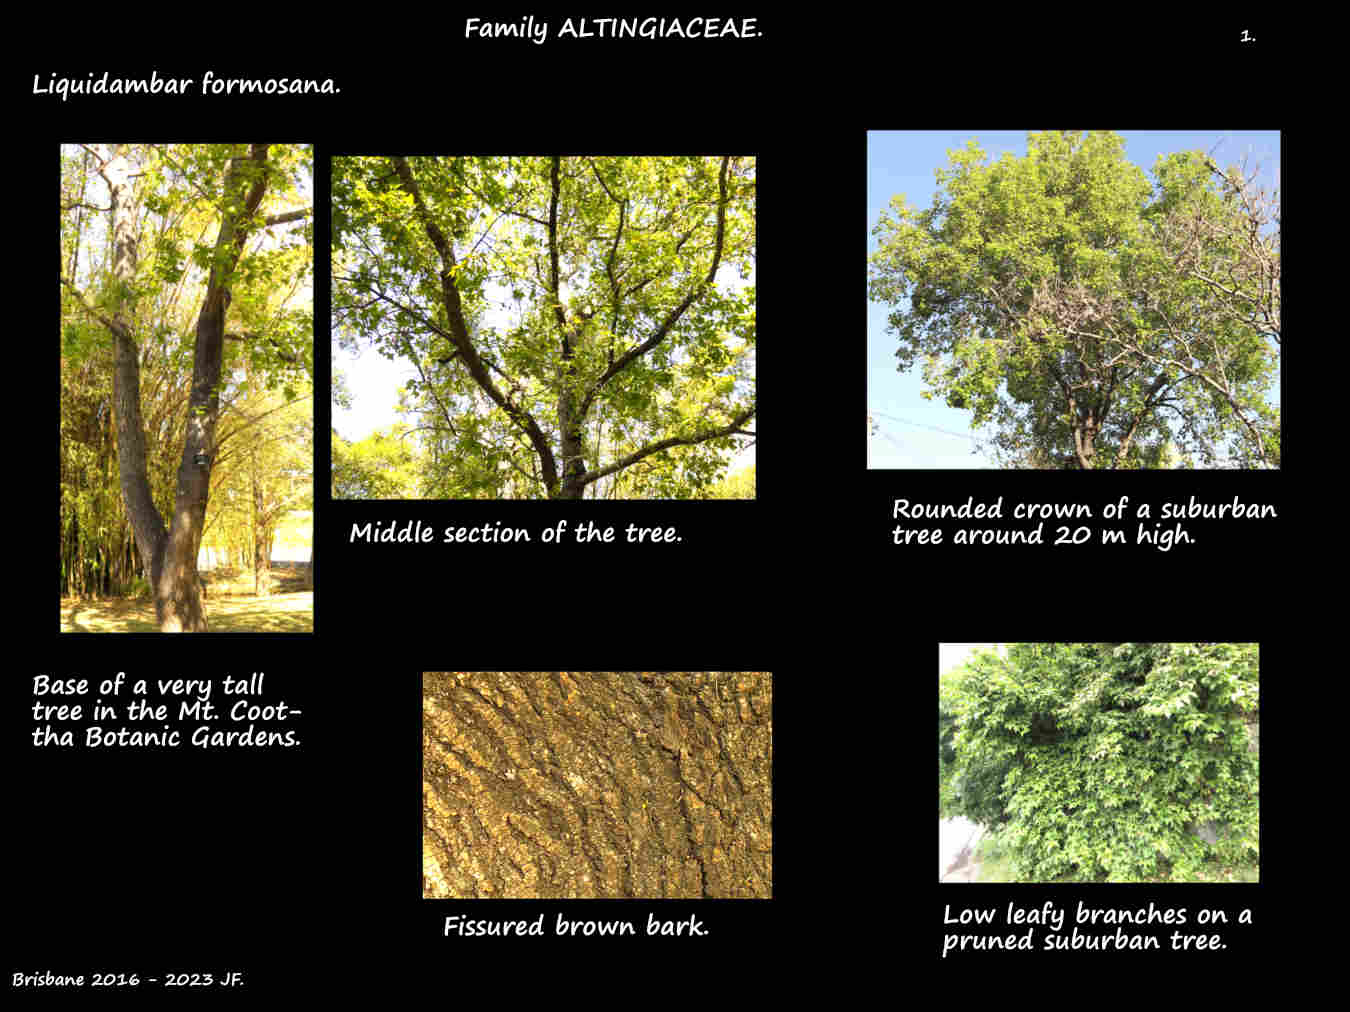 1 Liquidambar formosana trees & bark